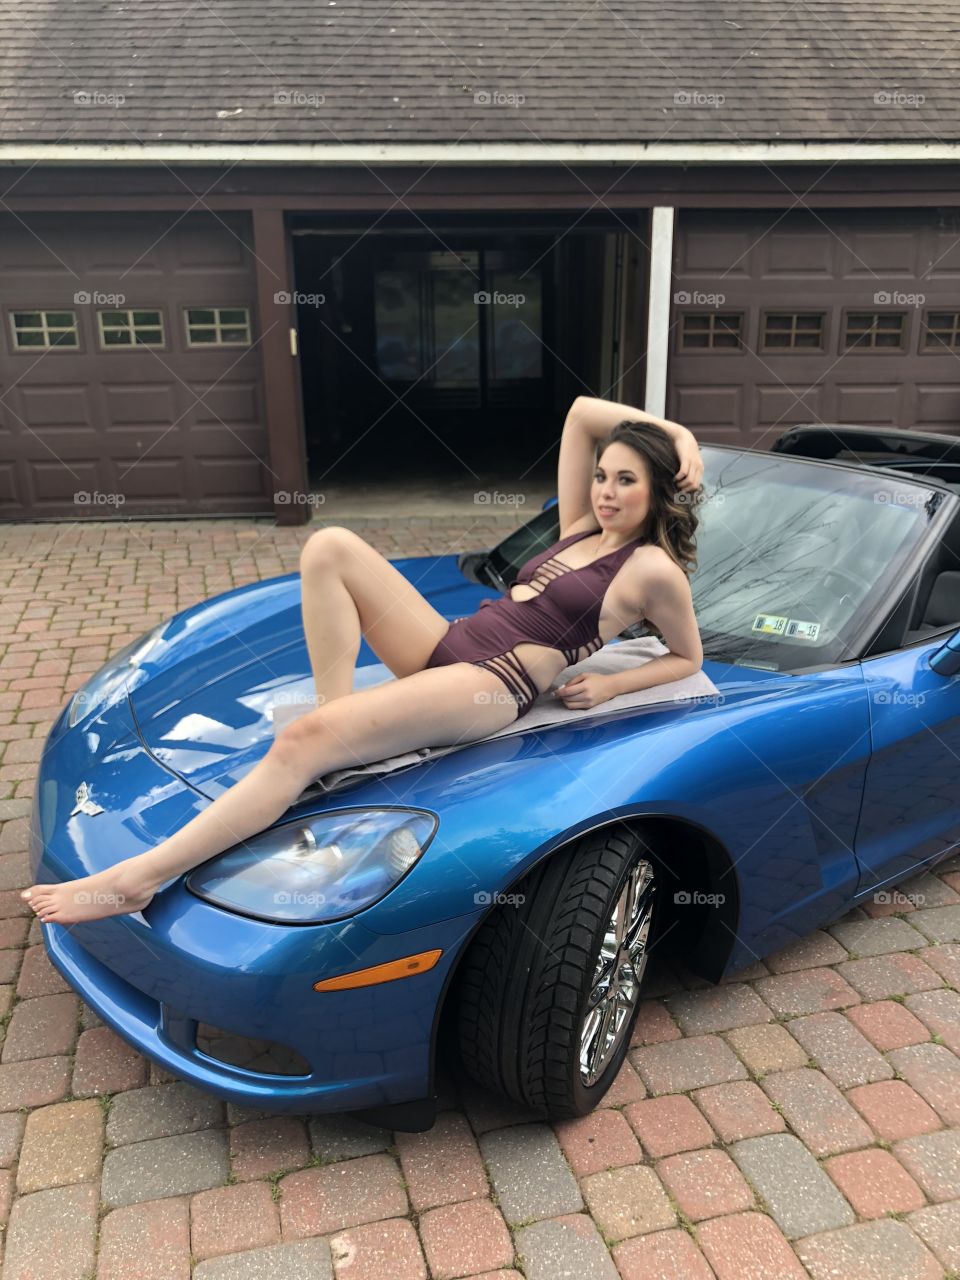 Model on a Corvette